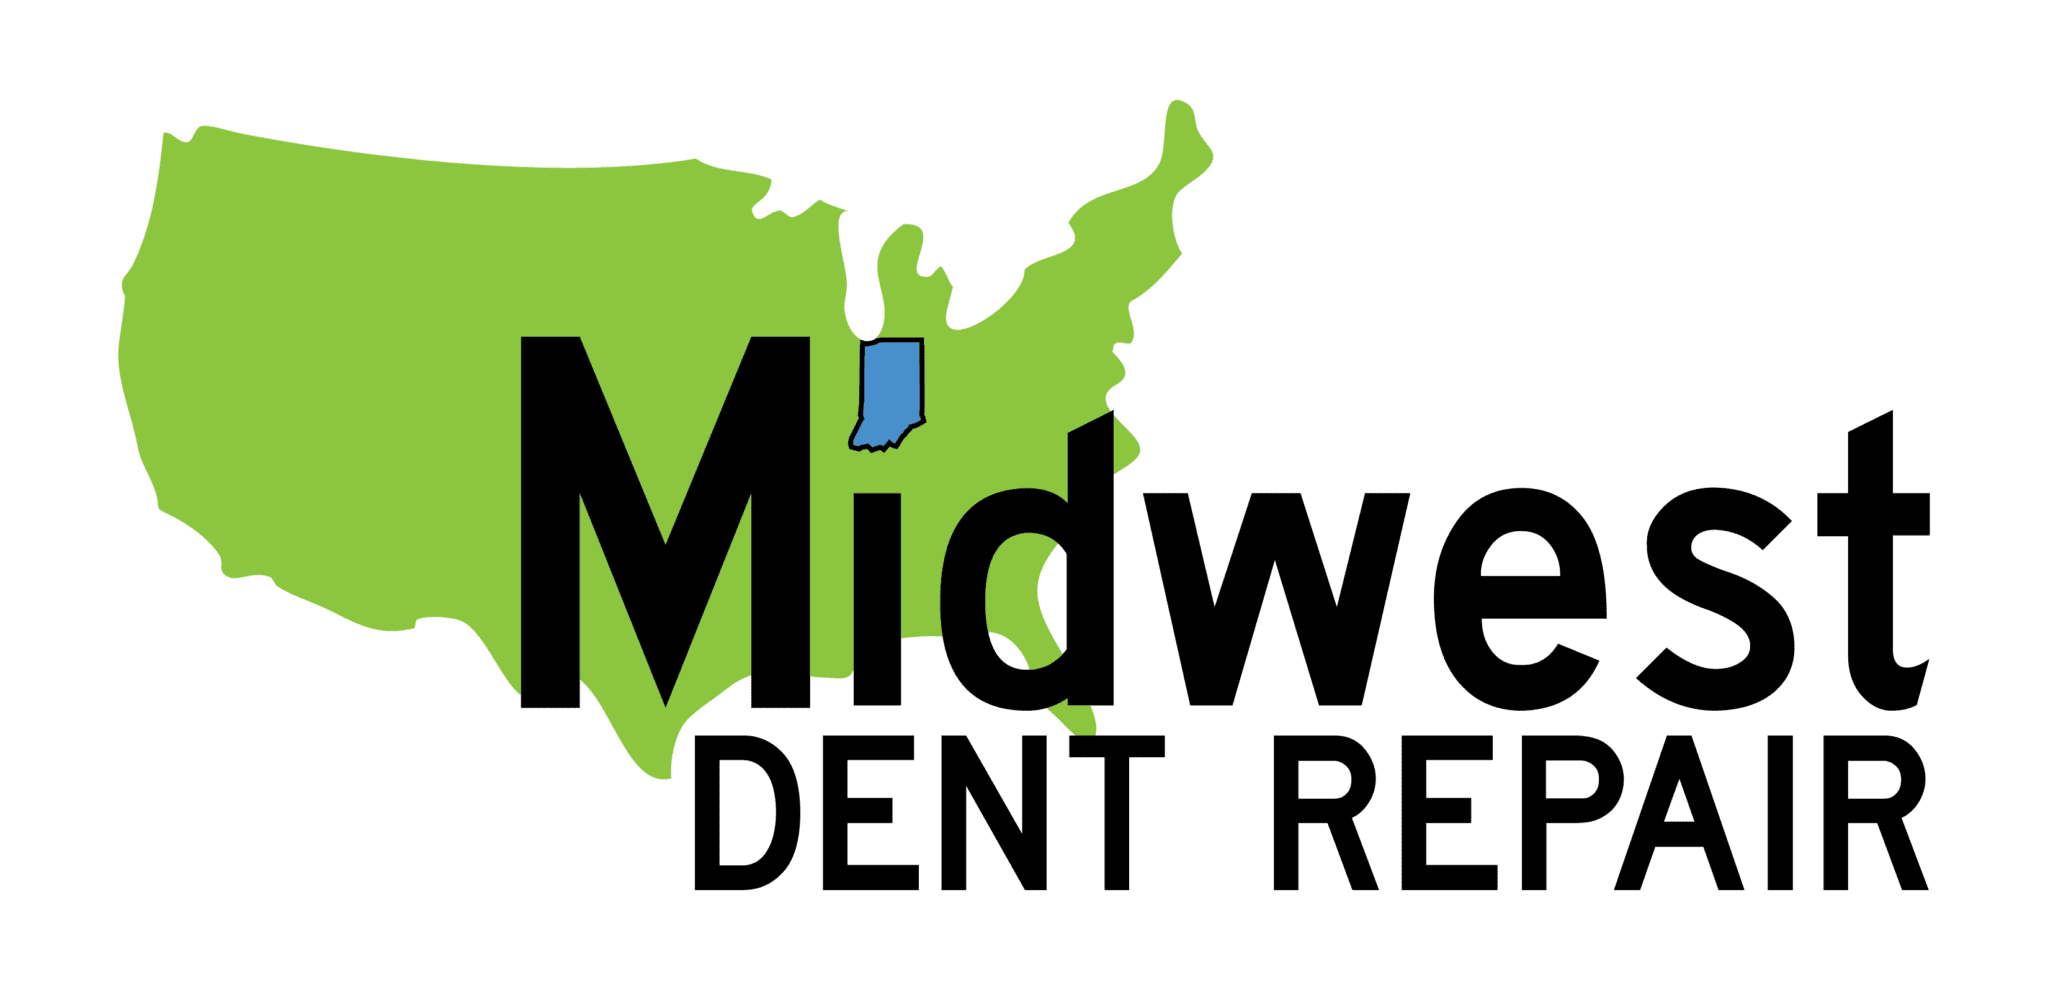 Midwest Dent Repair